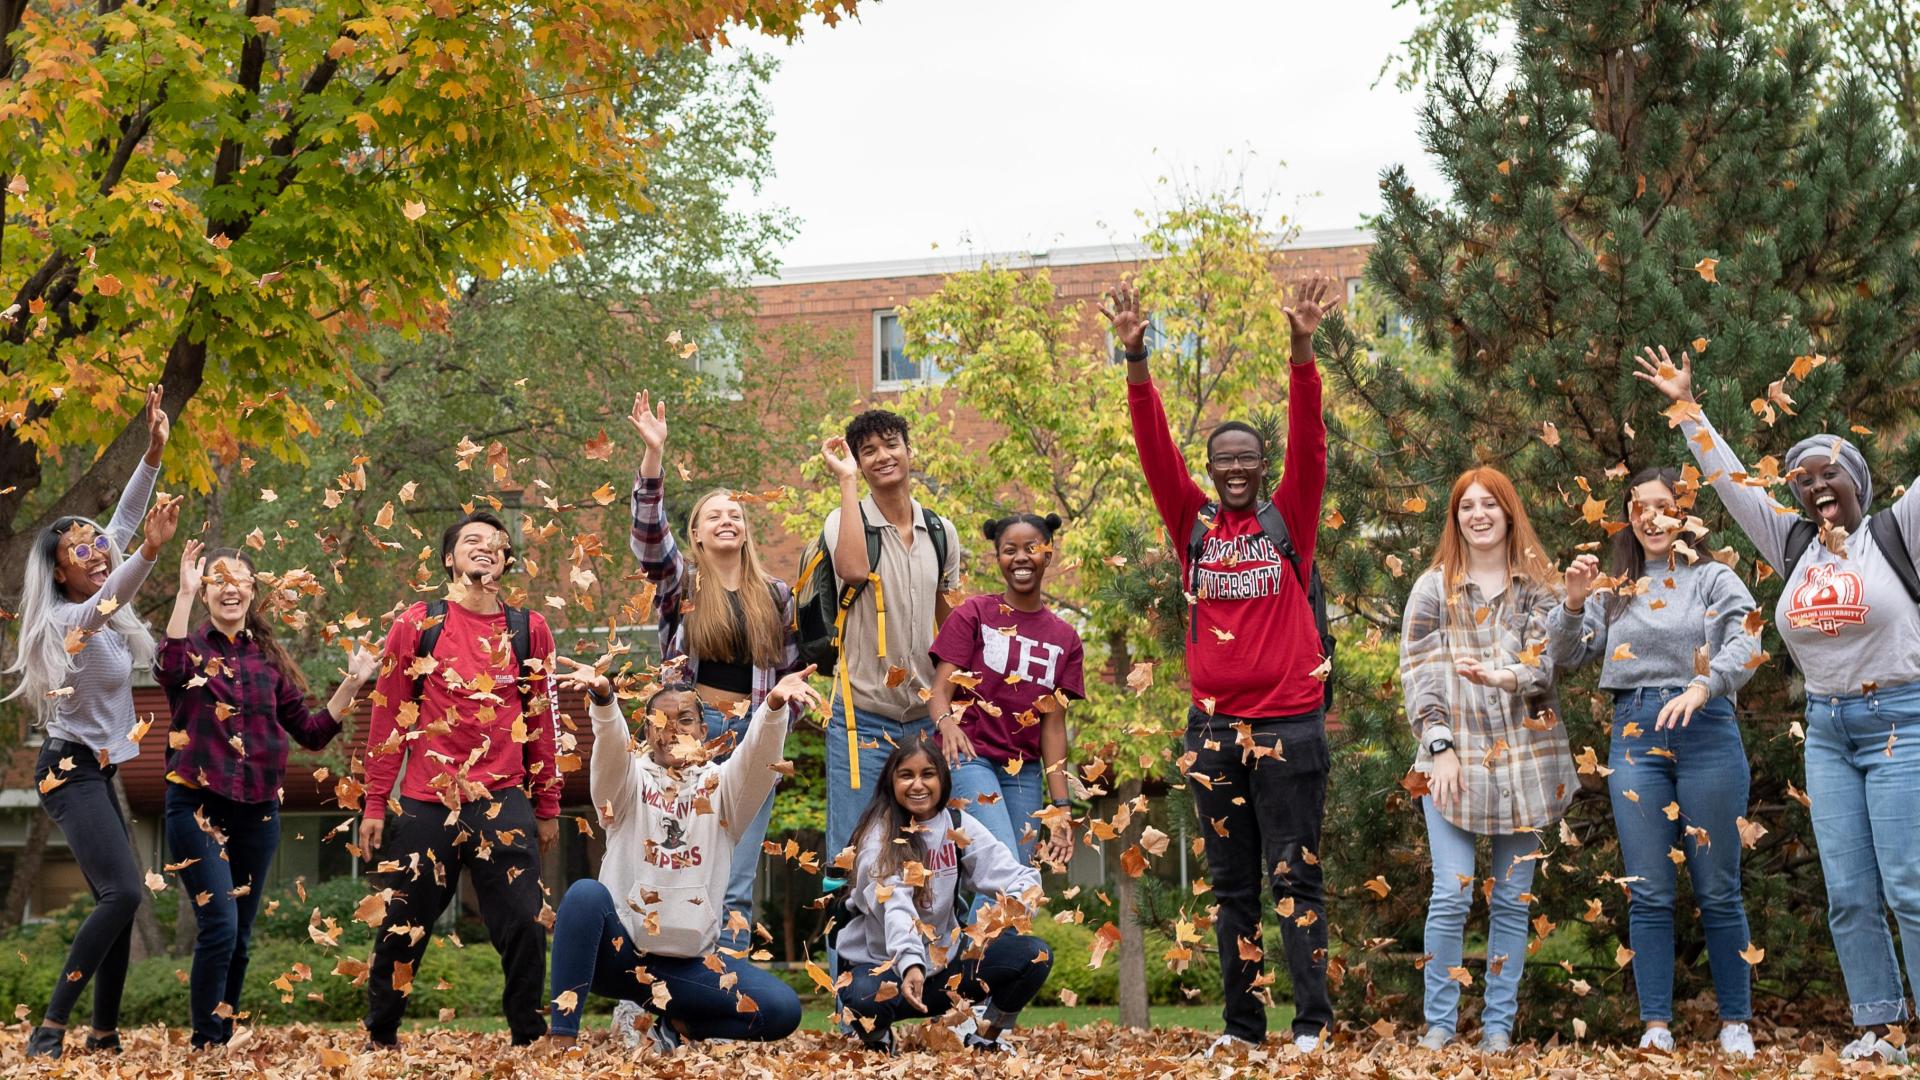  侫Ƶ happy students at 侫Ƶ during the fall blowing the leafs